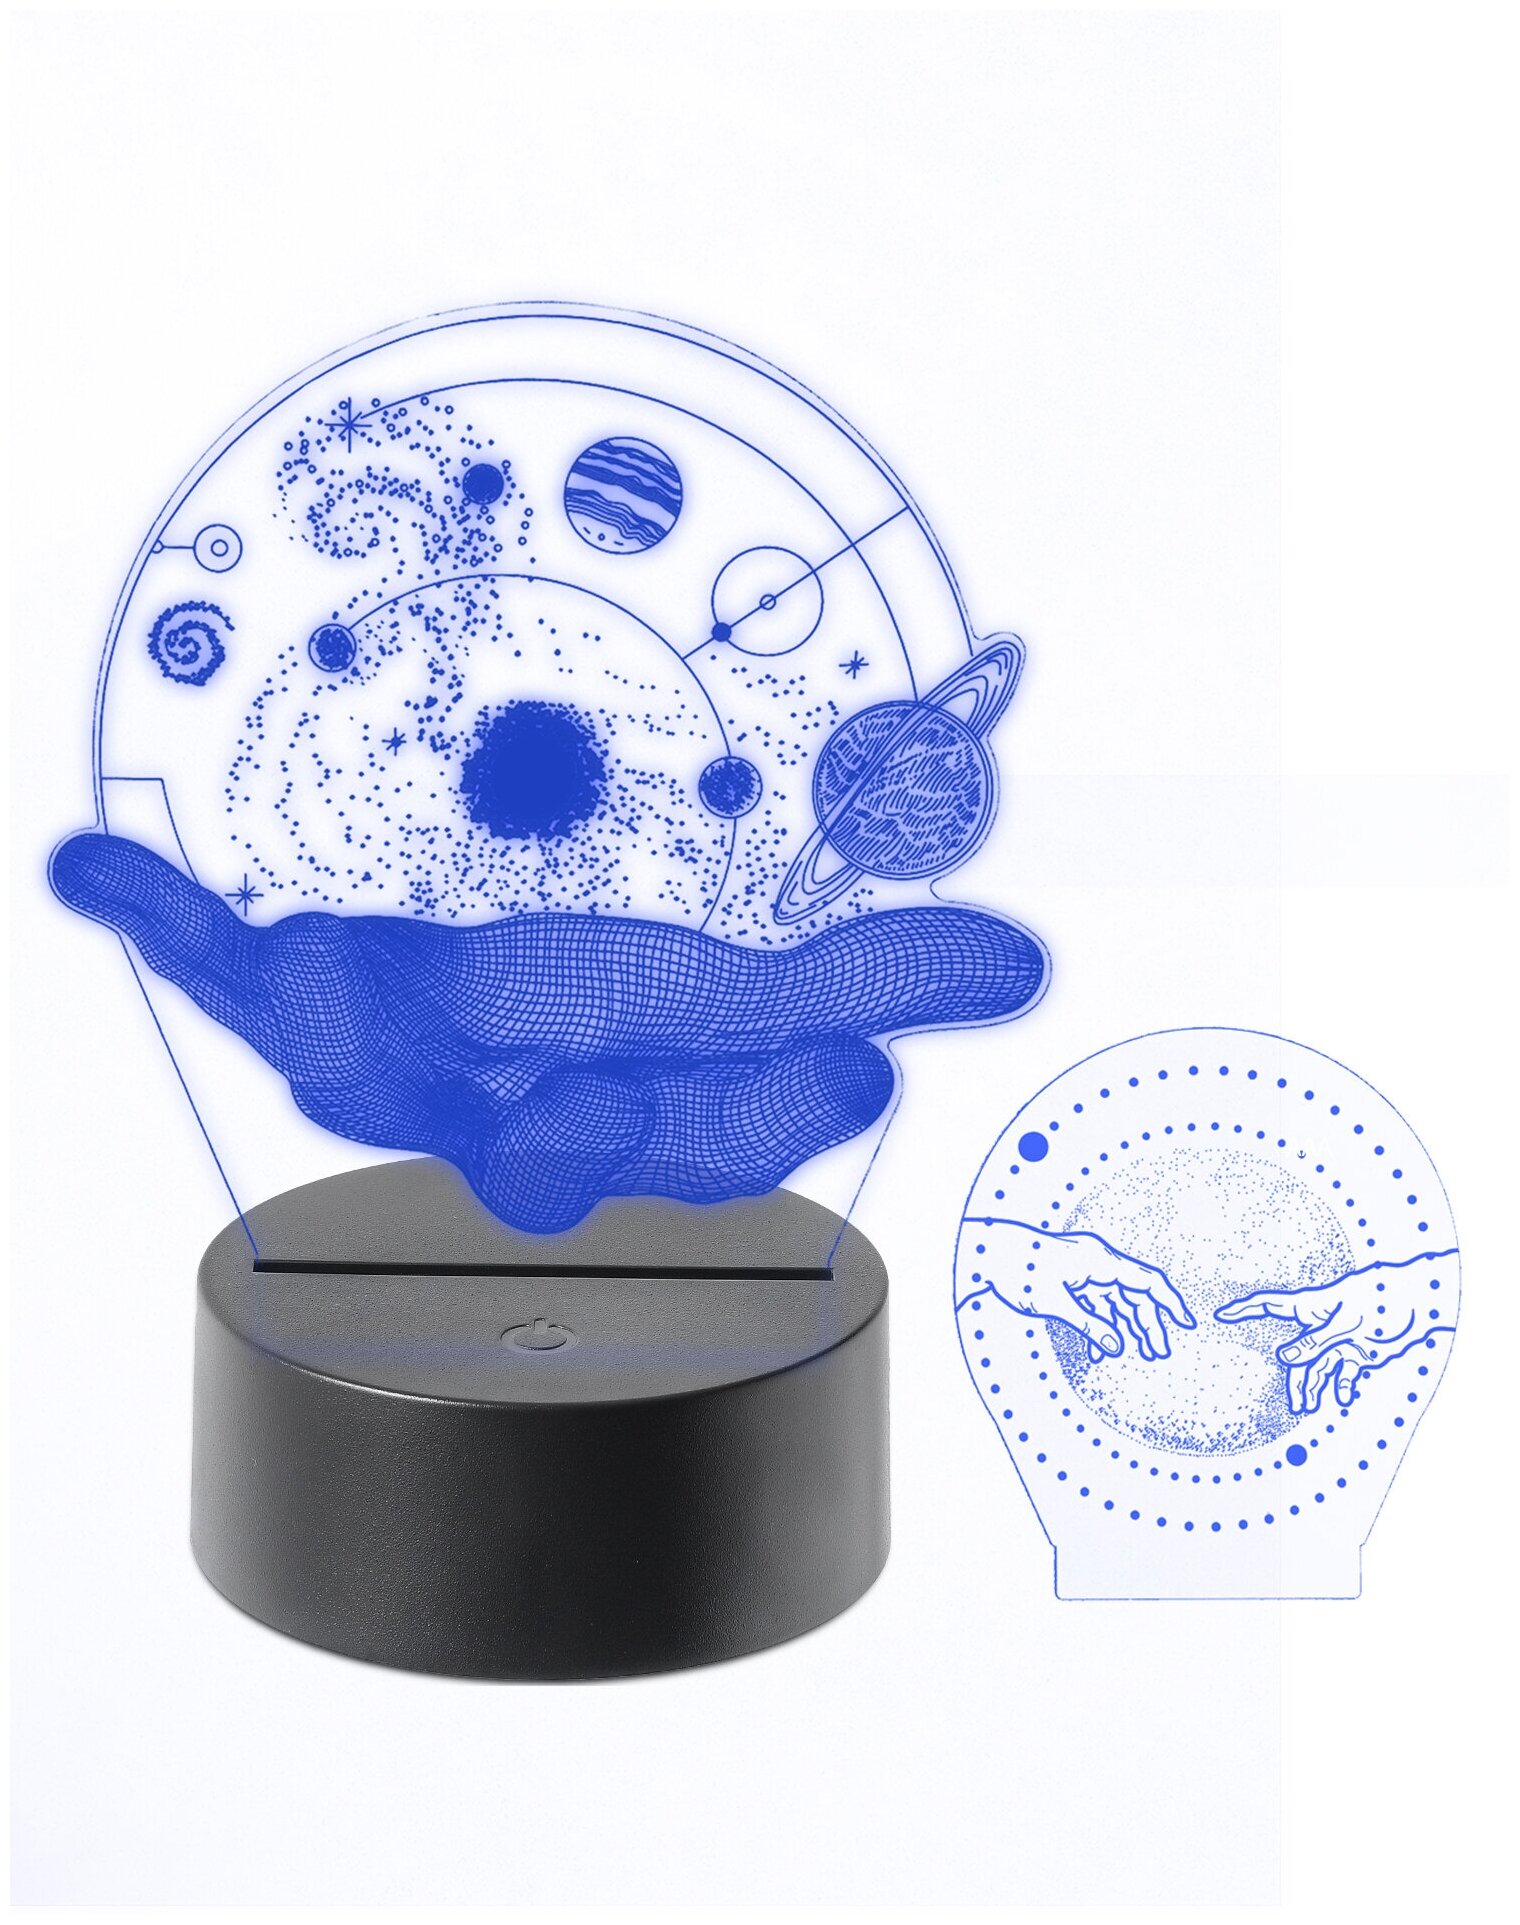 3D ночник детский для сна/светильник настольный декоративный космос/подарок ребенку мальчику на день рождения с двумя рисунками многоцветный: "Космос"